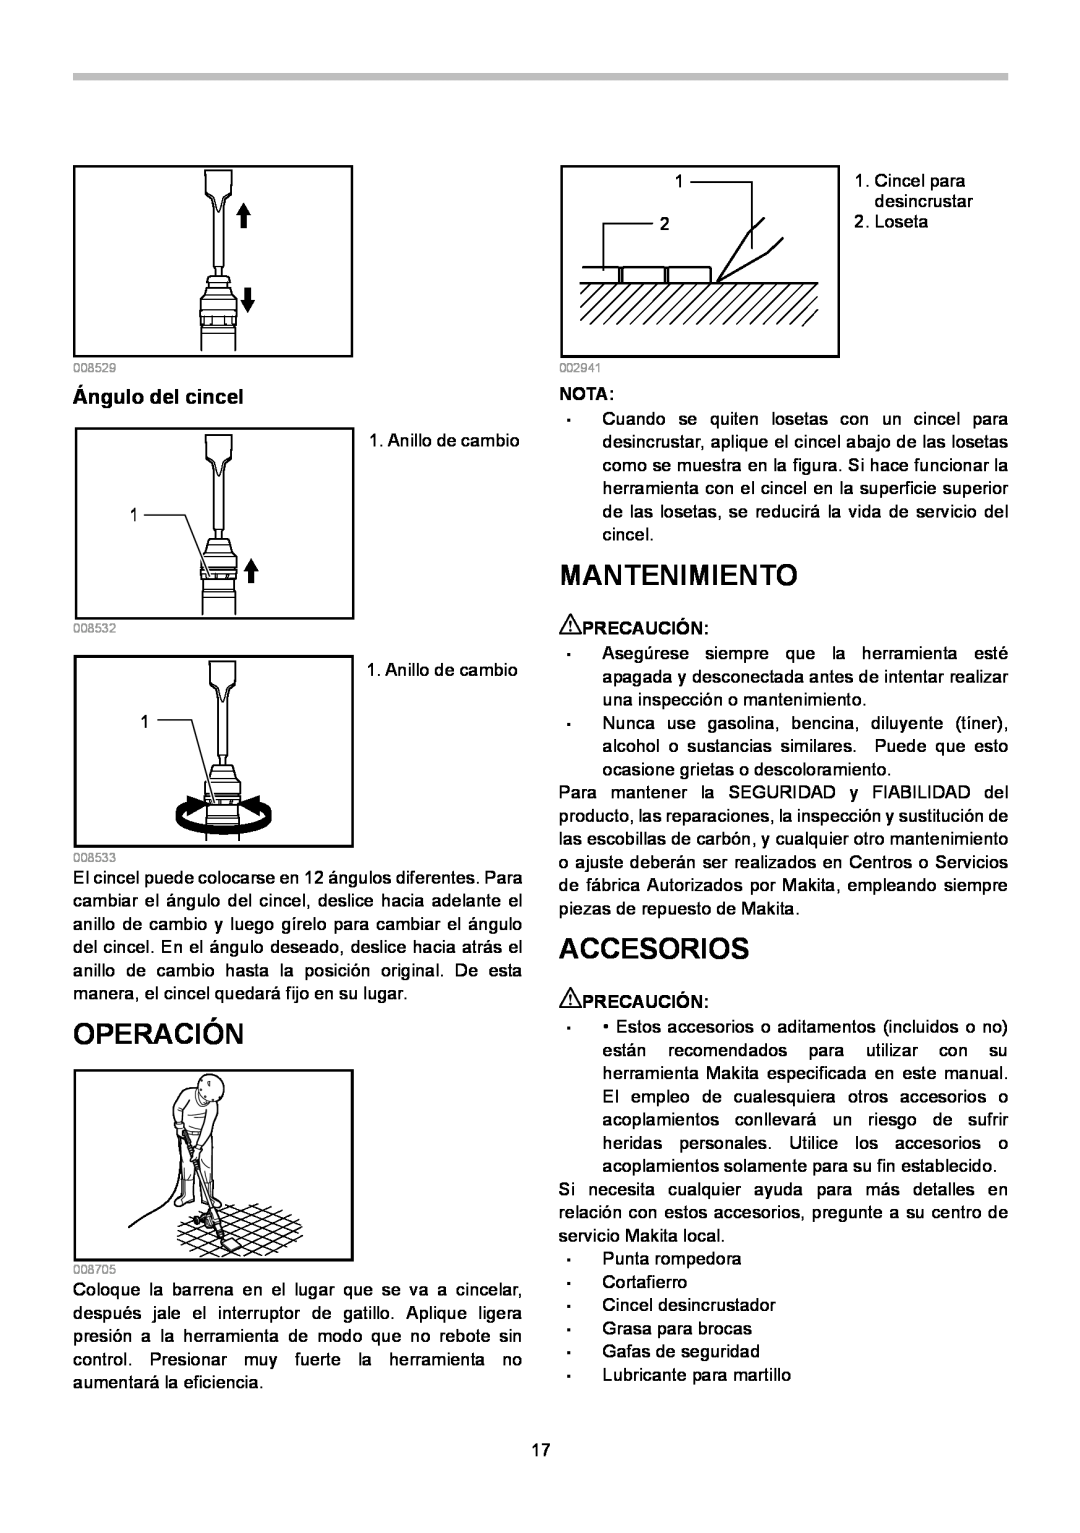 Makita HK1820L instruction manual Mantenimiento, Operación, Accesorios, Ángulo del cincel 